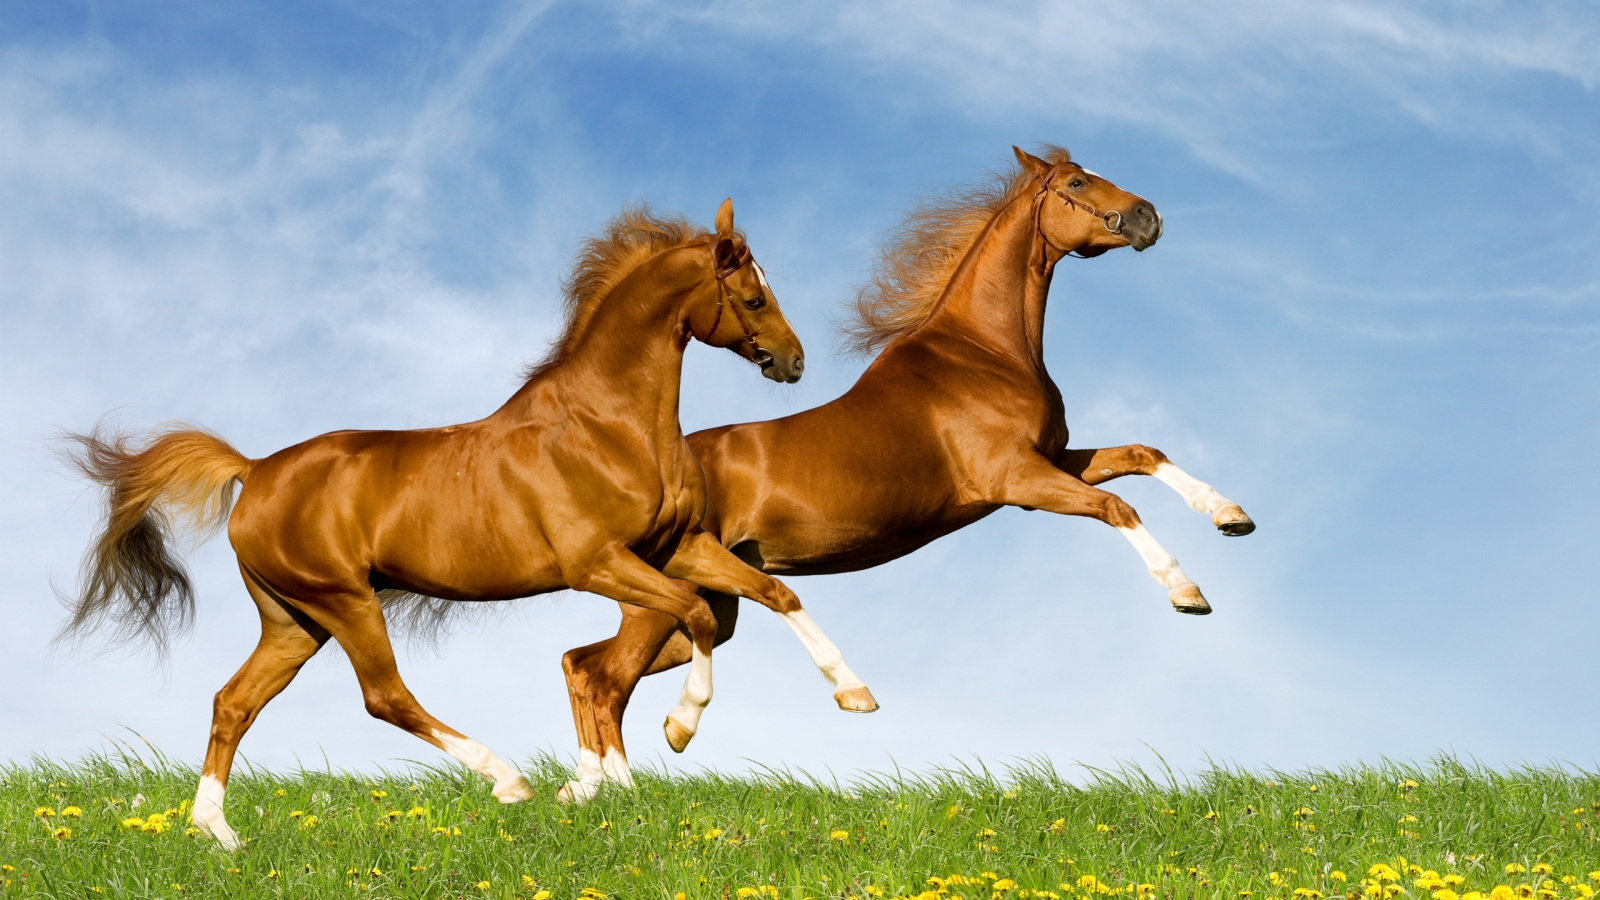 Horses Running for 1600 x 900 HDTV resolution